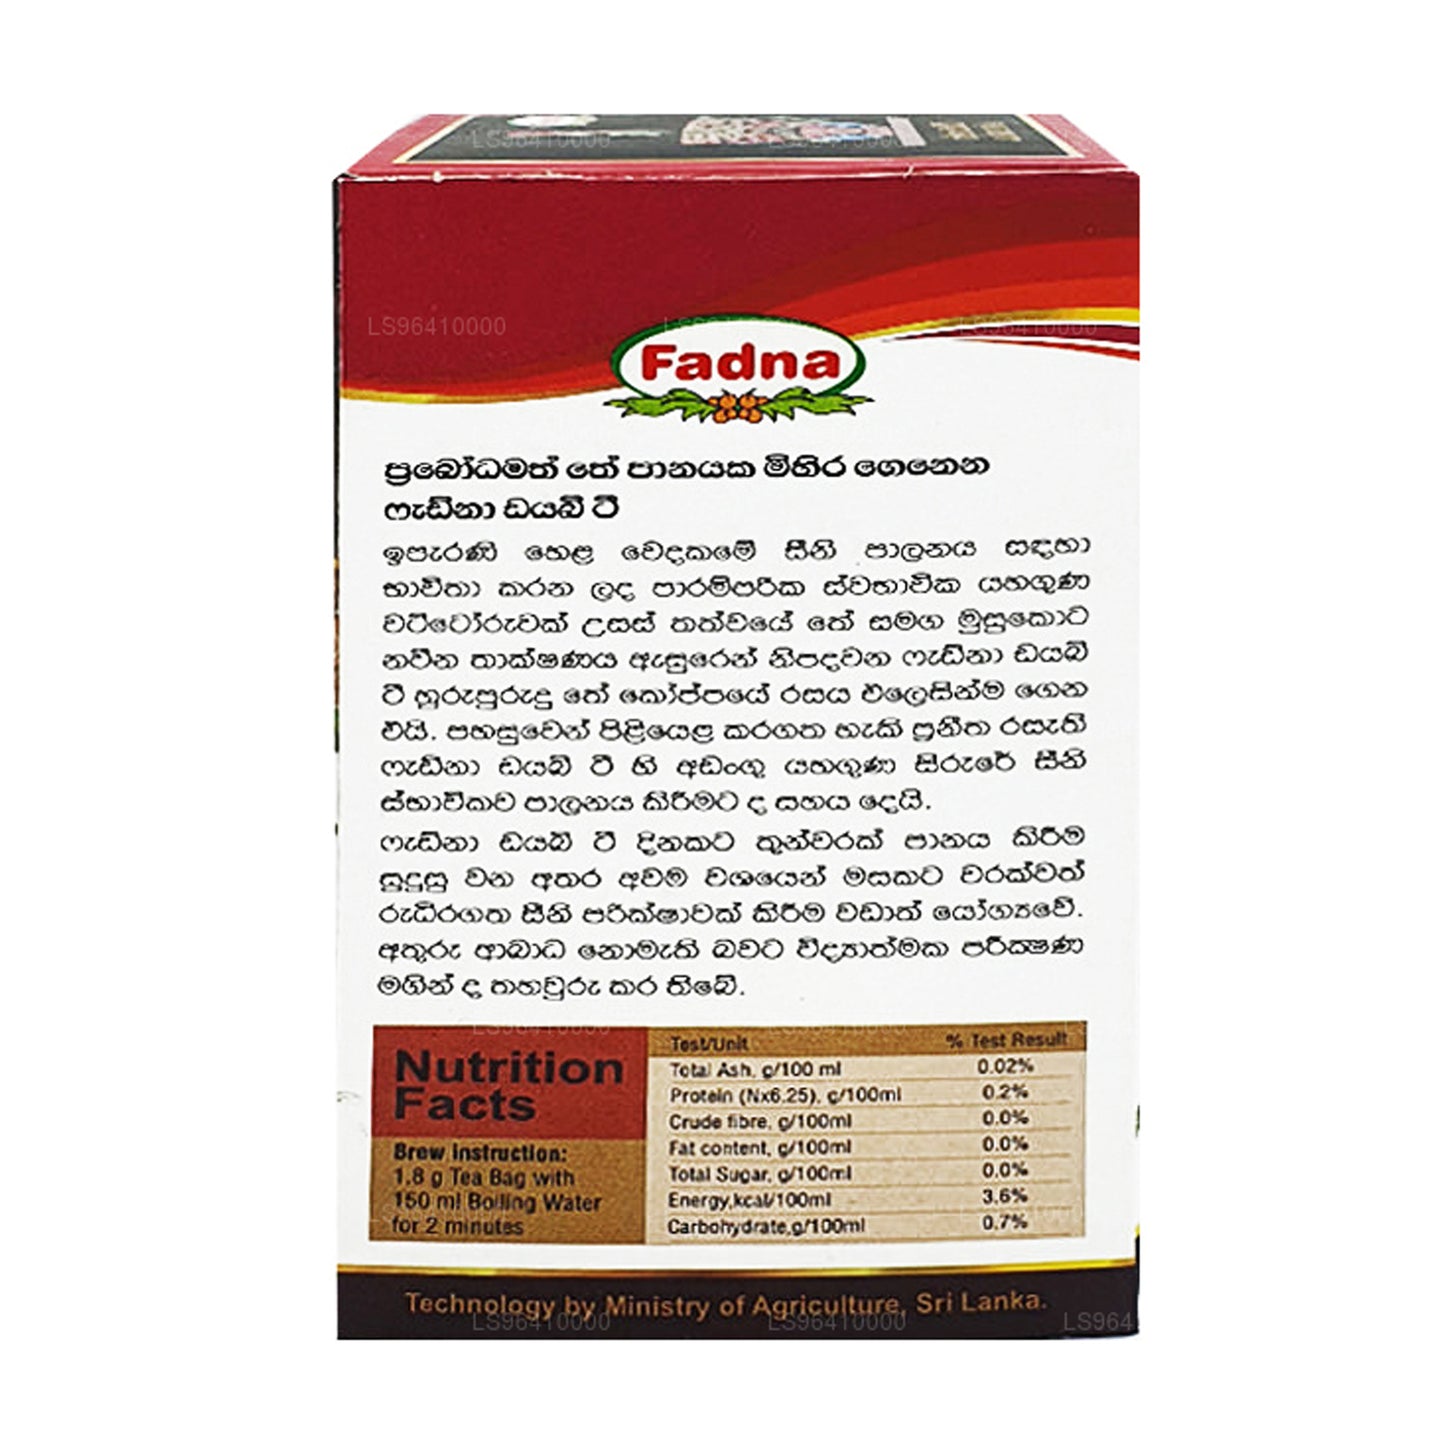 Чай «Фадна Диабе» (40 г) 20 пакетиков